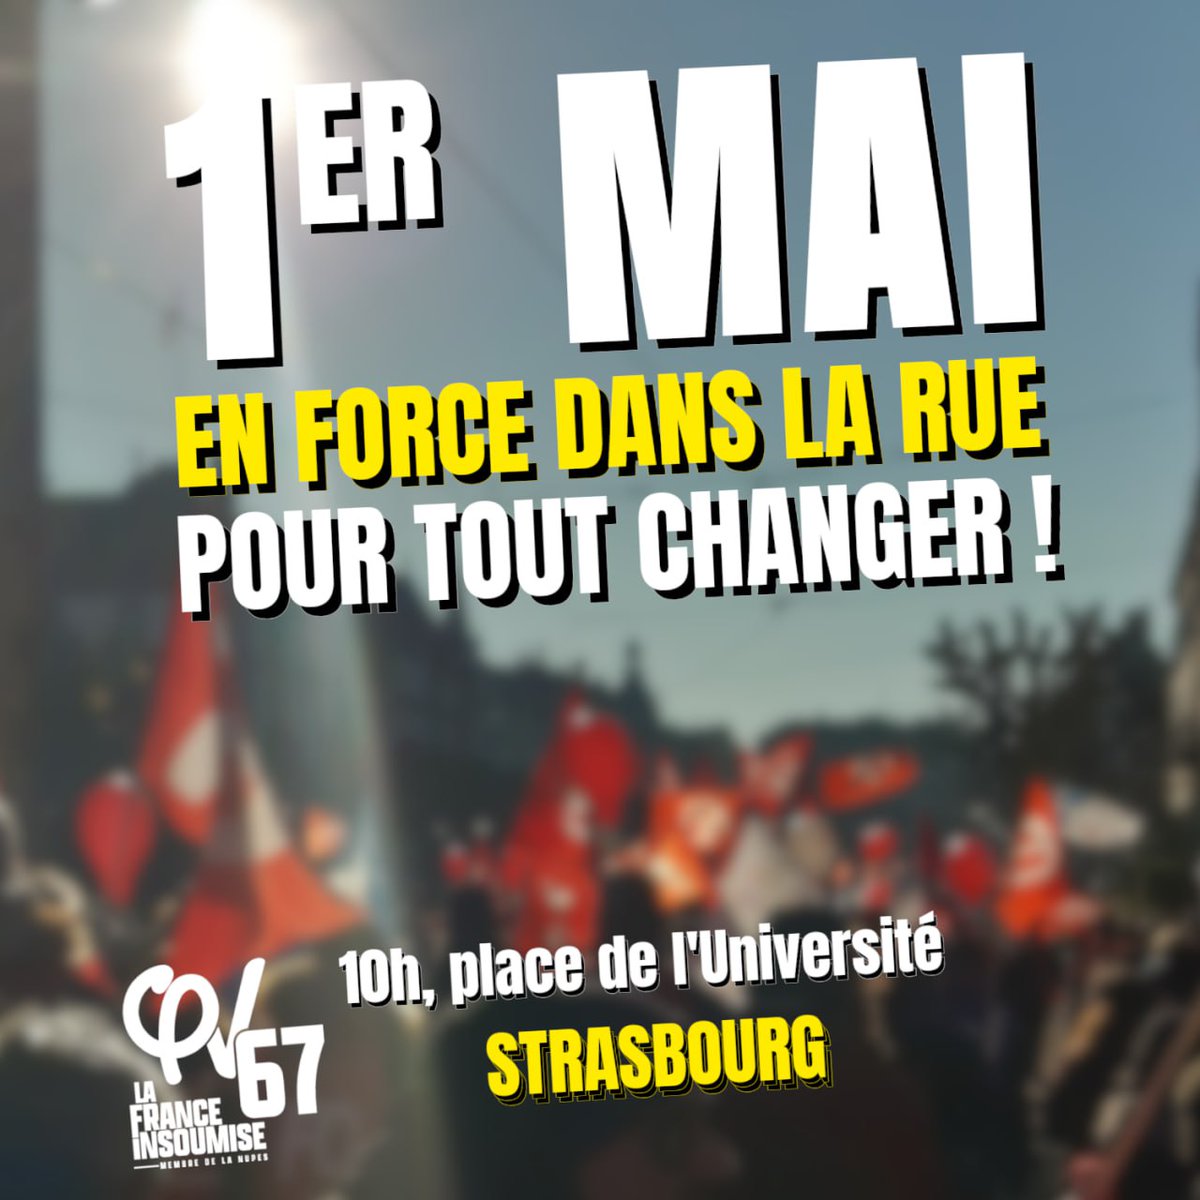 🔴Mobilisation unitaire pour le 1er mai à #Strasbourg ➡️ 10h, place de l'Université #1erMai